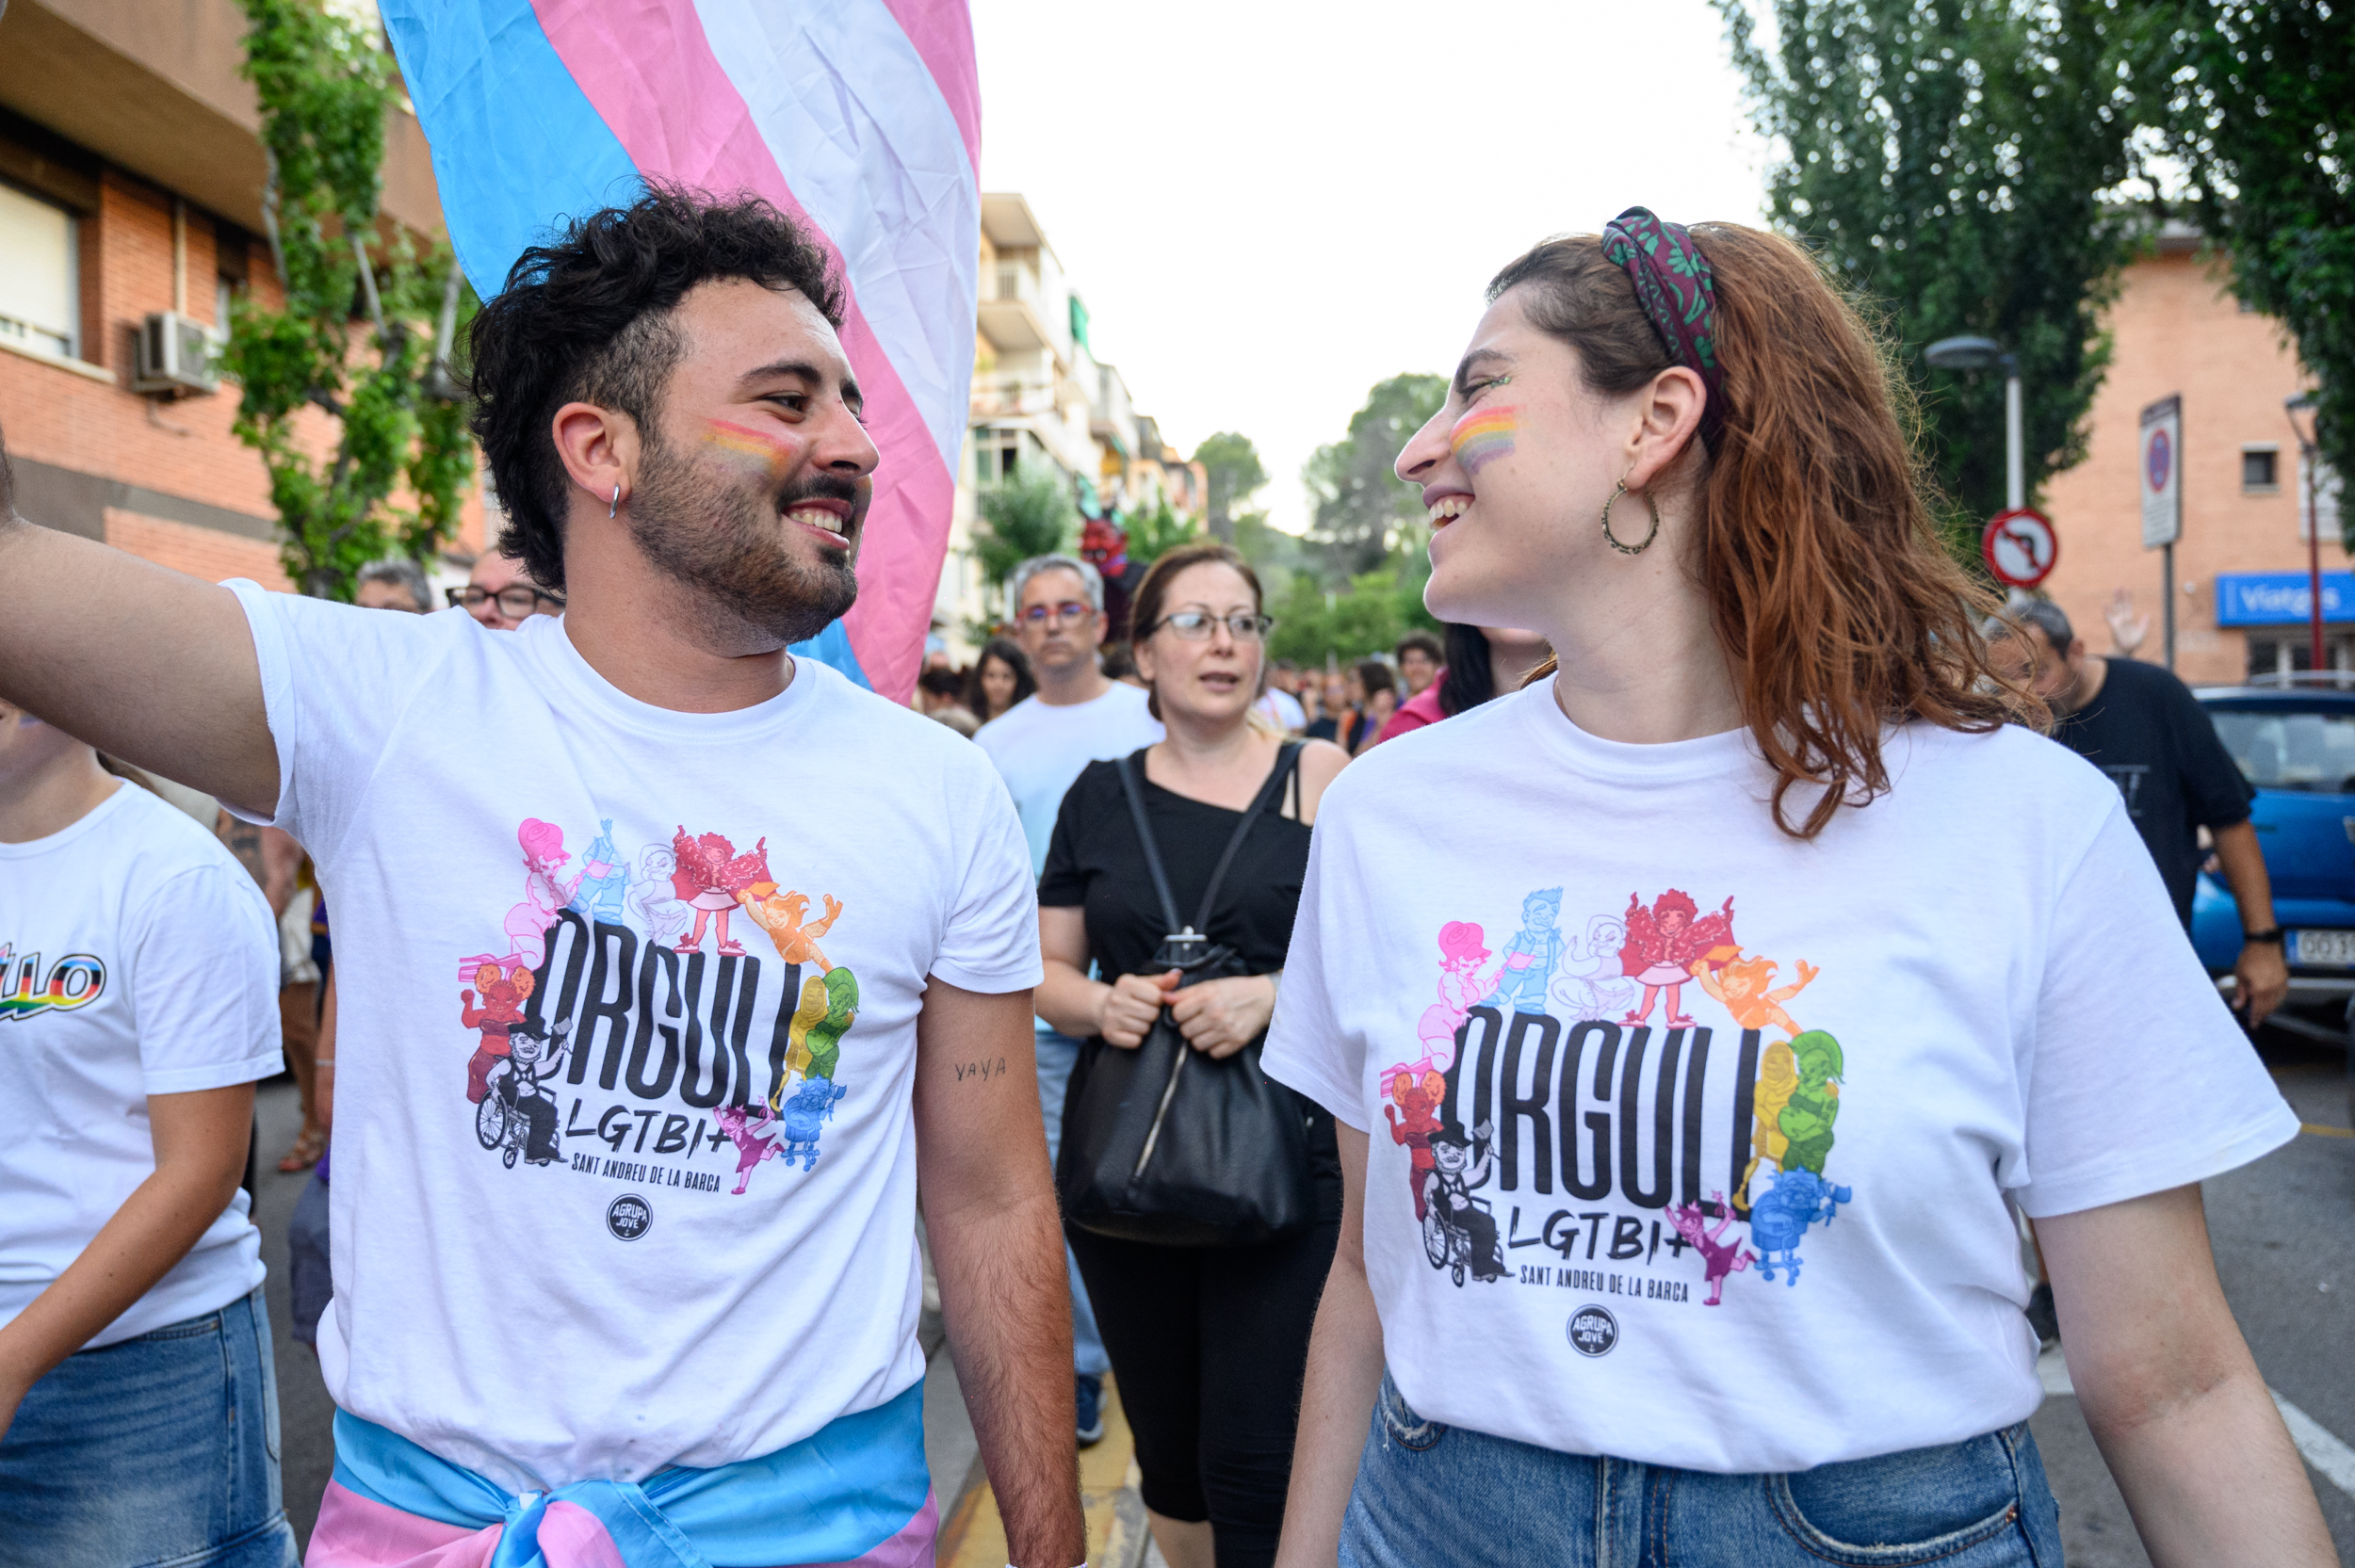 Imatge de la notícia: S’obren les incripcions per representar Sant Andreu de la Barca a la primera Trobada d’Abanderats LGBTI de Catalunya